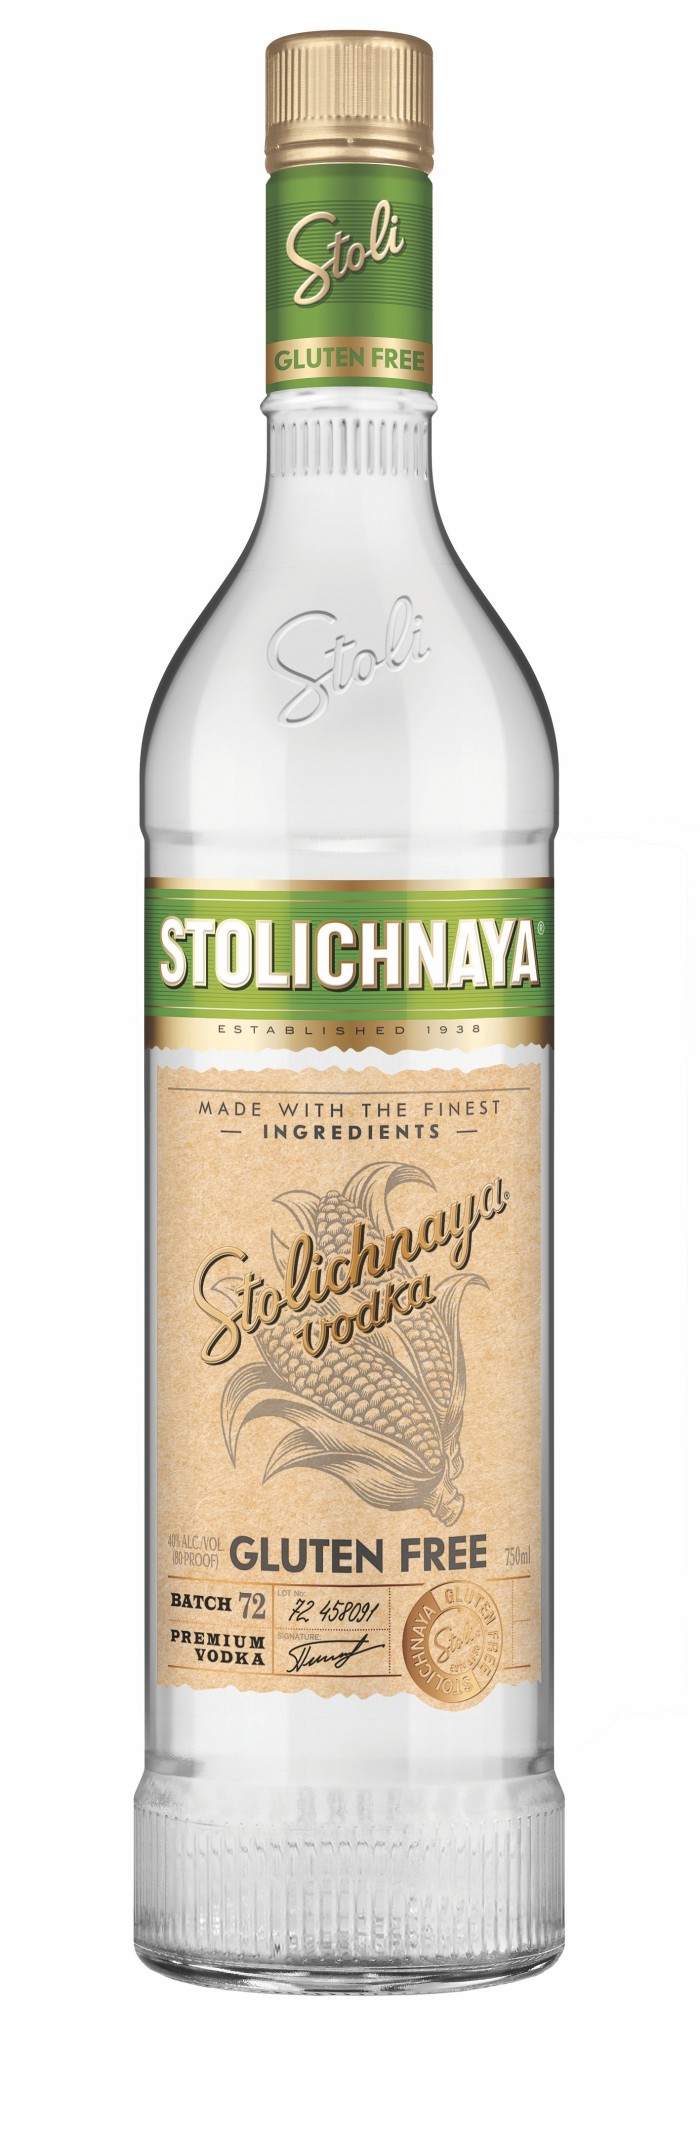 Stolichnaya will soon market their vodka as gluten free. (Photo: Stolichnaya.)